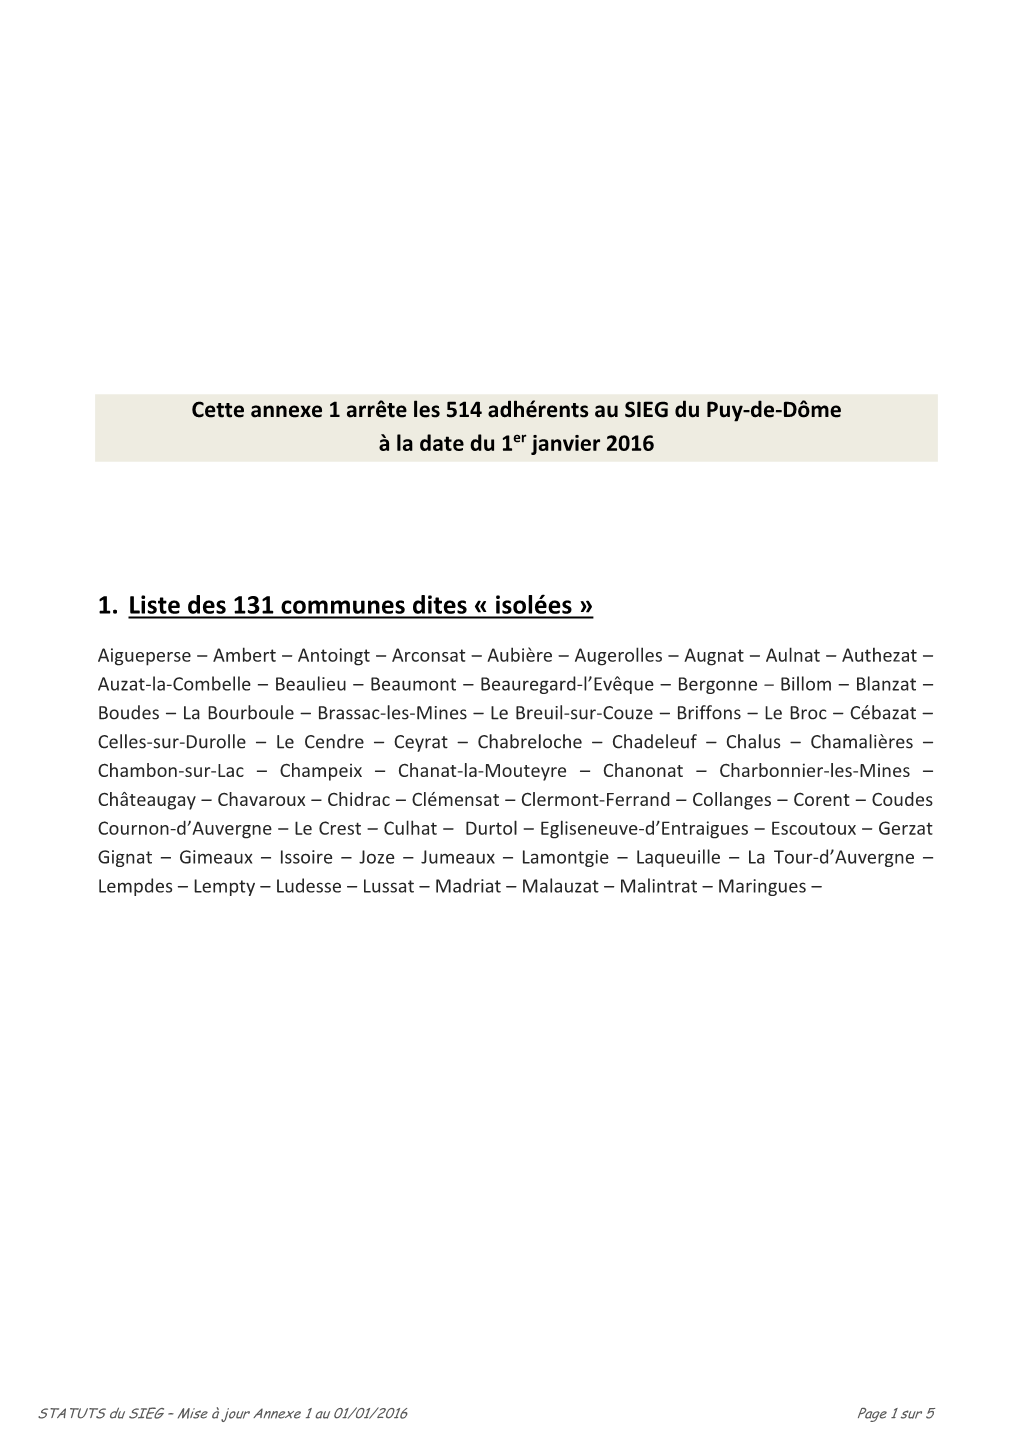 1. Liste Des 131 Communes Dites « Isolées »